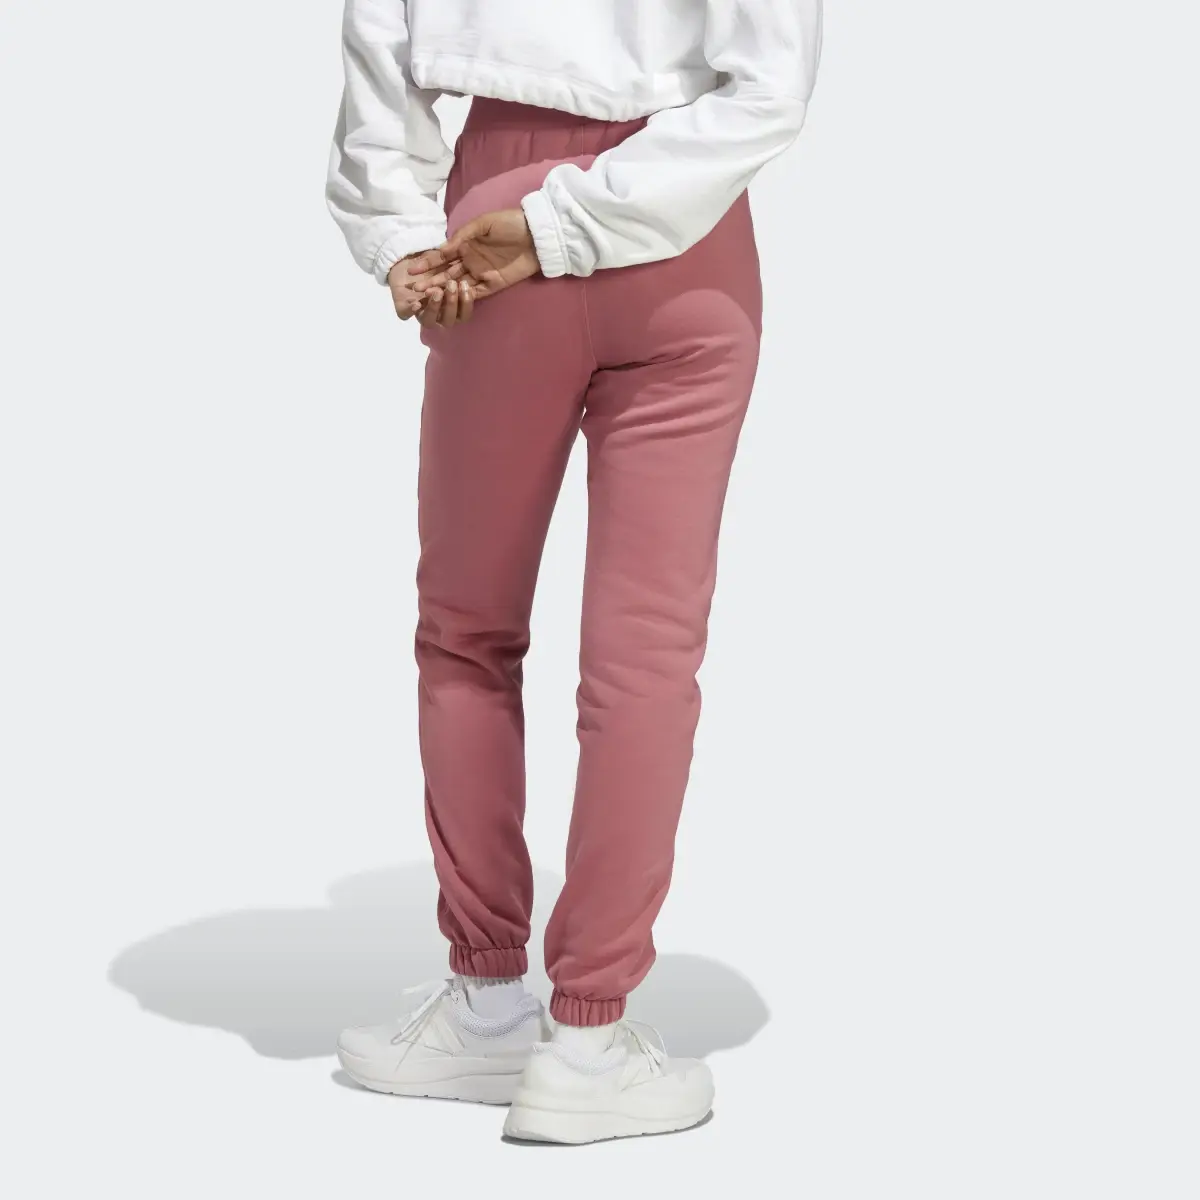 Adidas Lounge Fleece Pants. 2